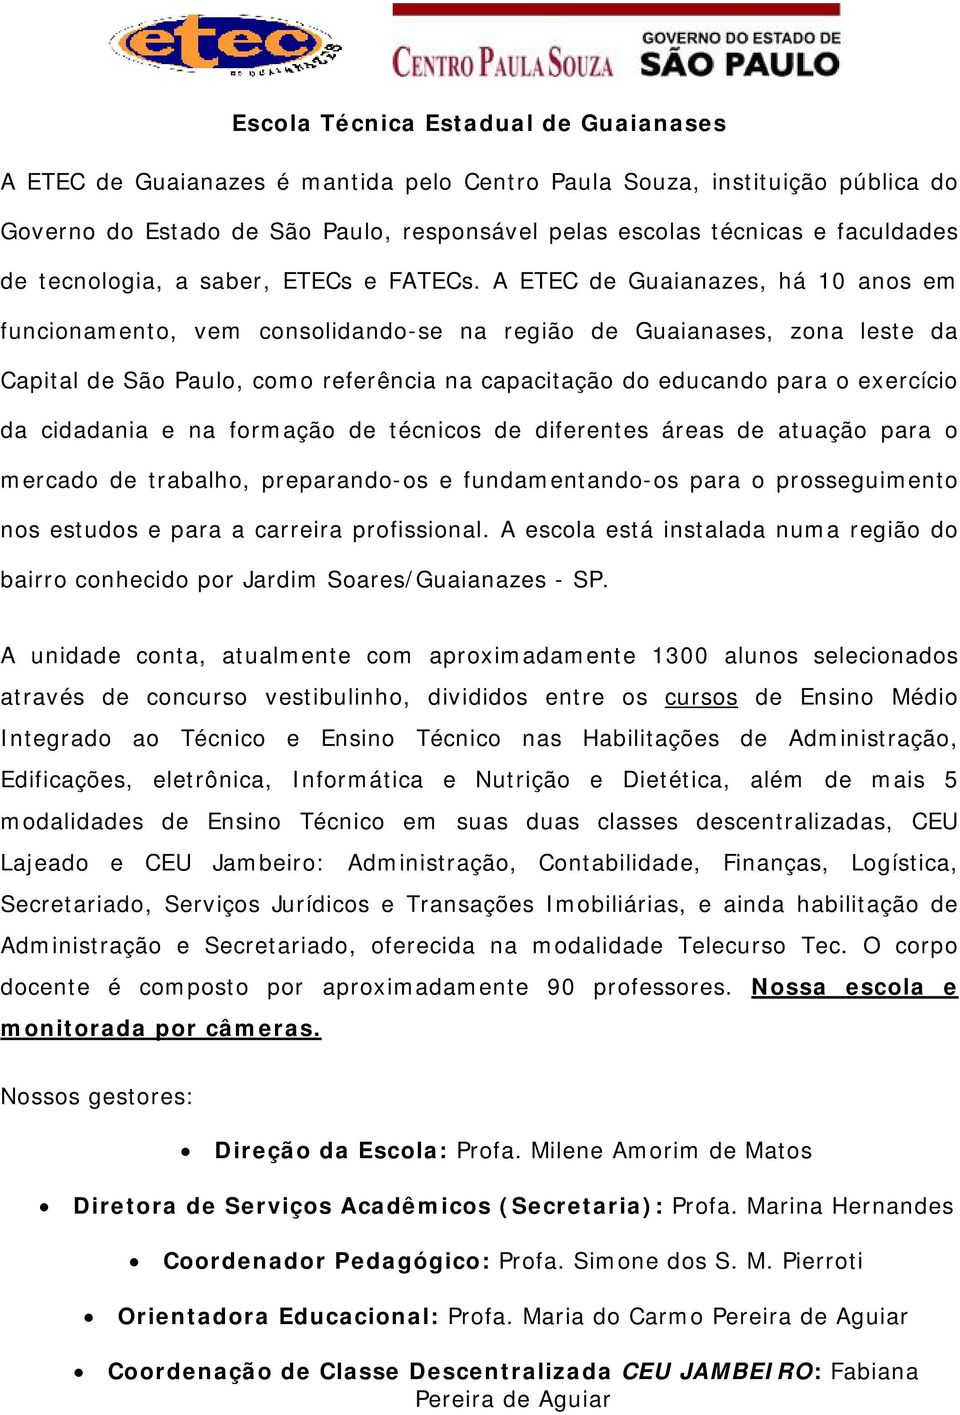 A ETEC de Guaianazes, há 10 anos em funcionamento, vem consolidando-se na região de Guaianases, zona leste da Capital de São Paulo, como referência na capacitação do educando para o exercício da